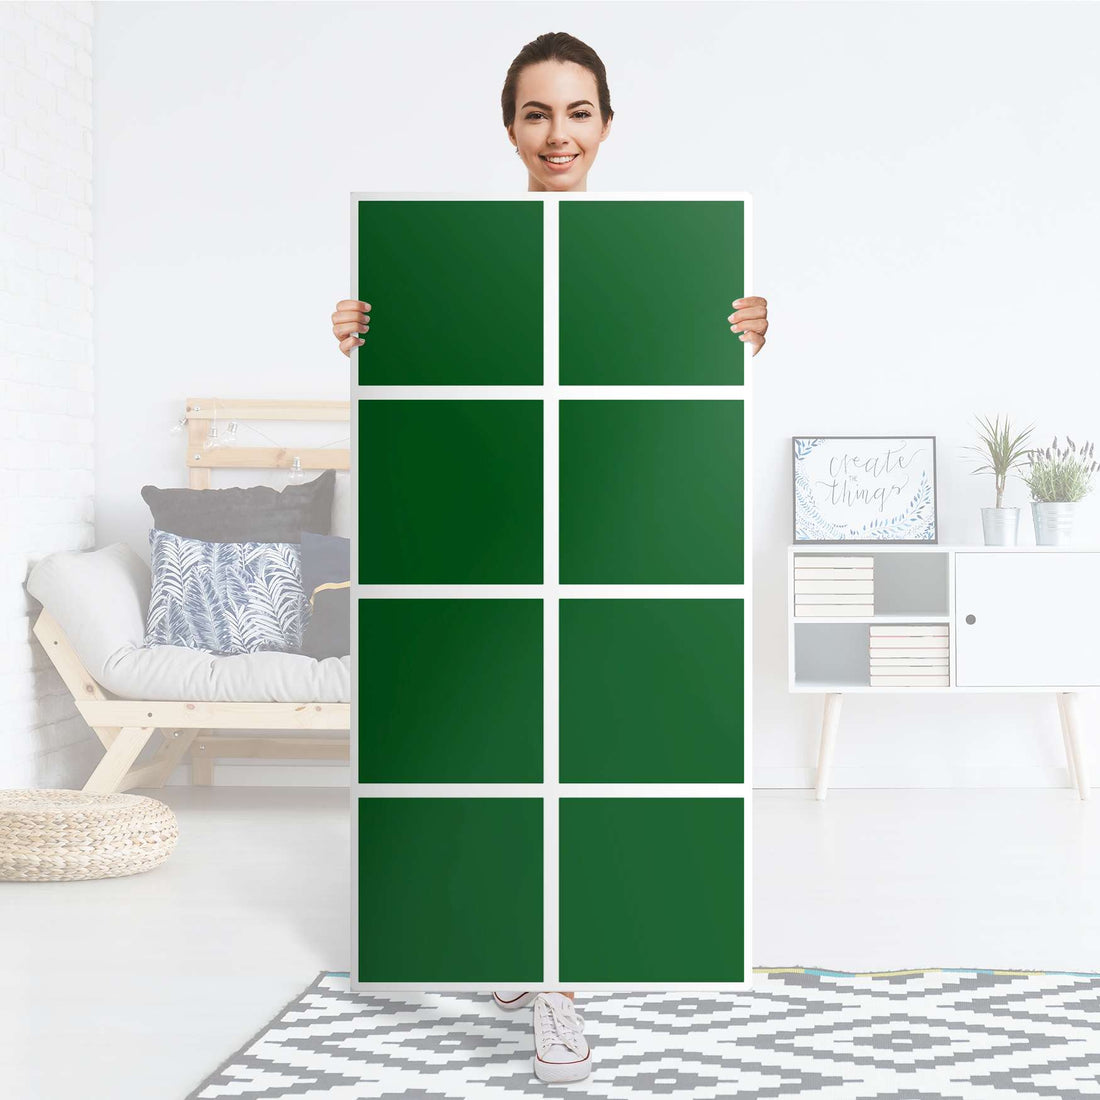 Klebefolie Grün Dark - IKEA Expedit Regal 8 Türen - Folie